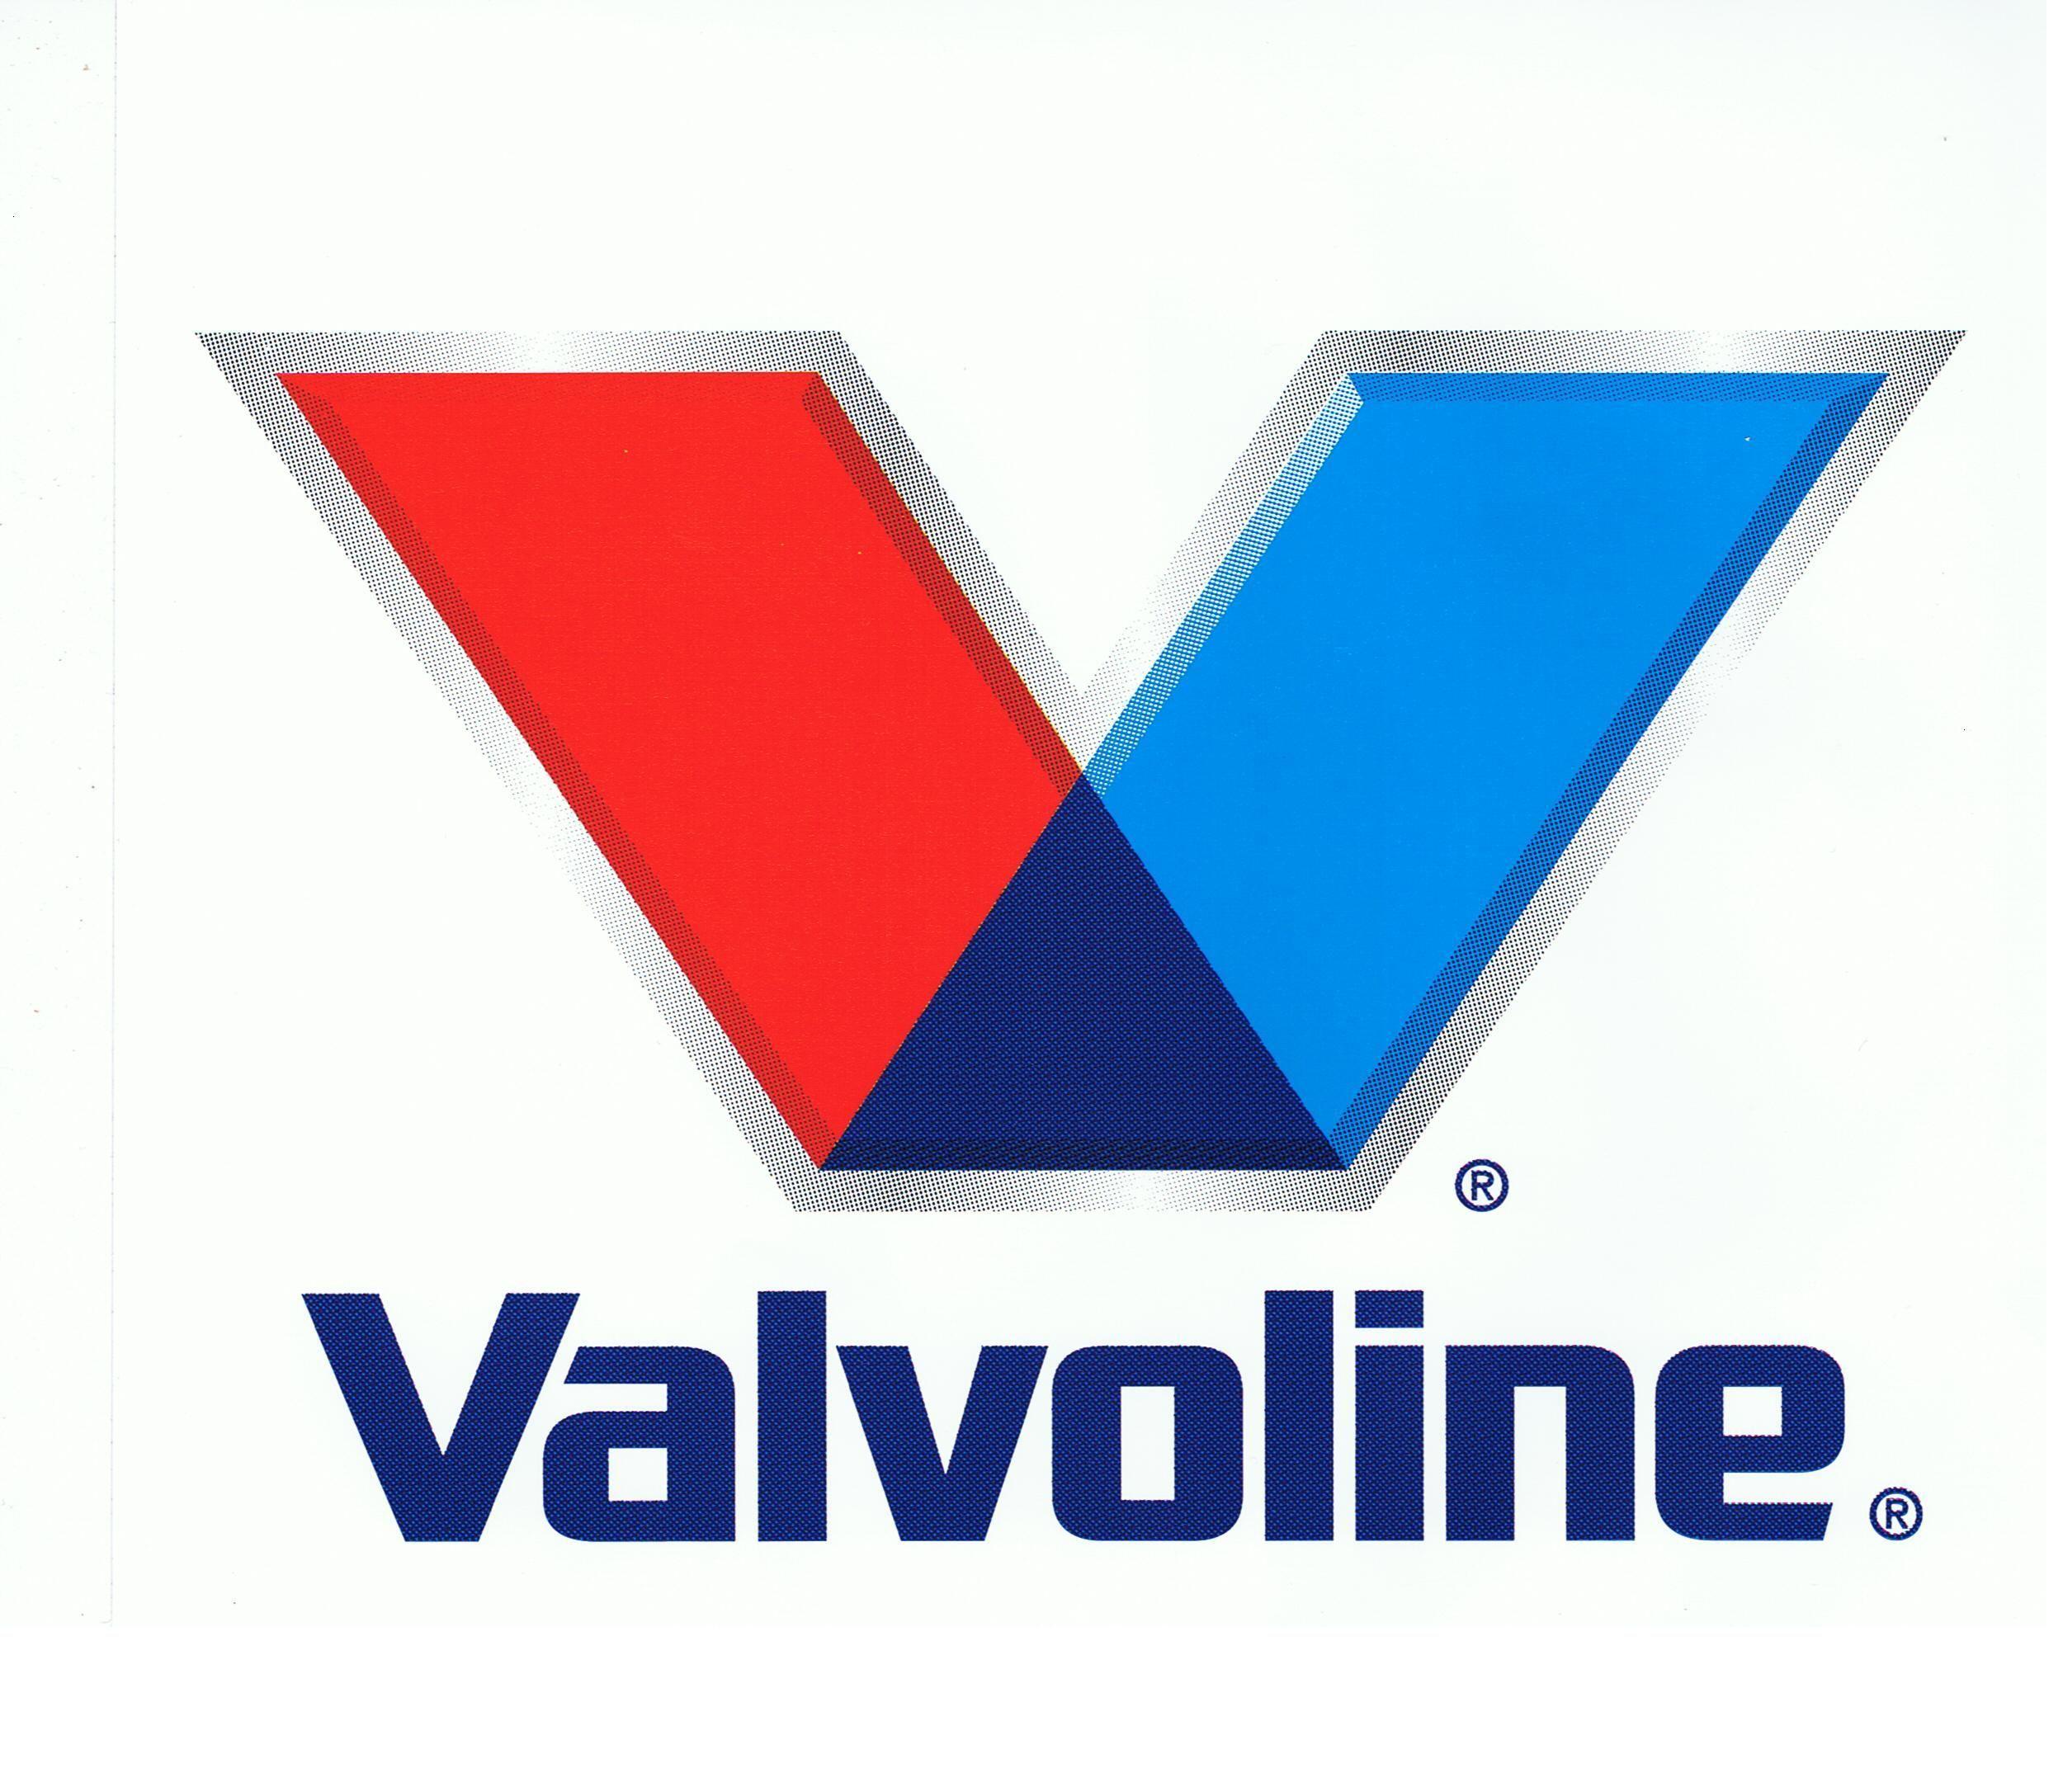 valvoline related logos. Best logo